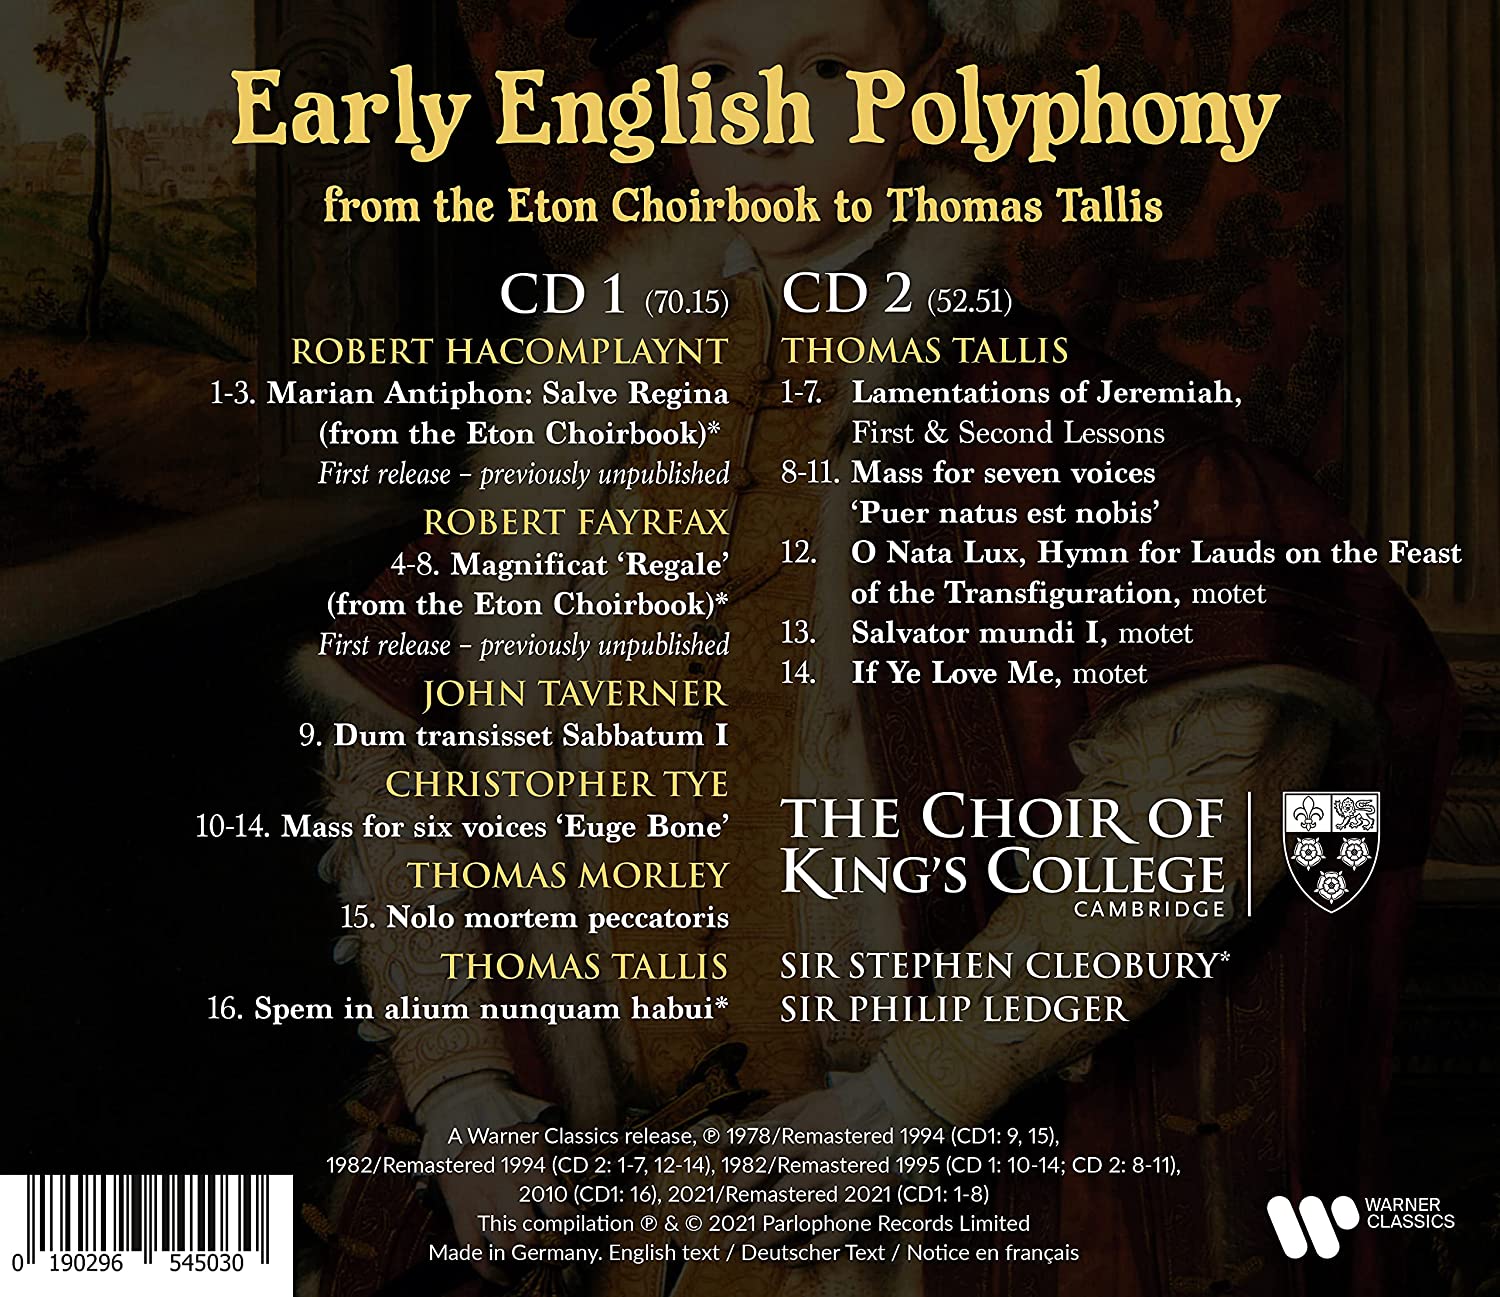 King's College Choir 영국의 초기 폴리포니 - 캠브리지 킹스 칼리지 합창단 (Early English Polyphony) 